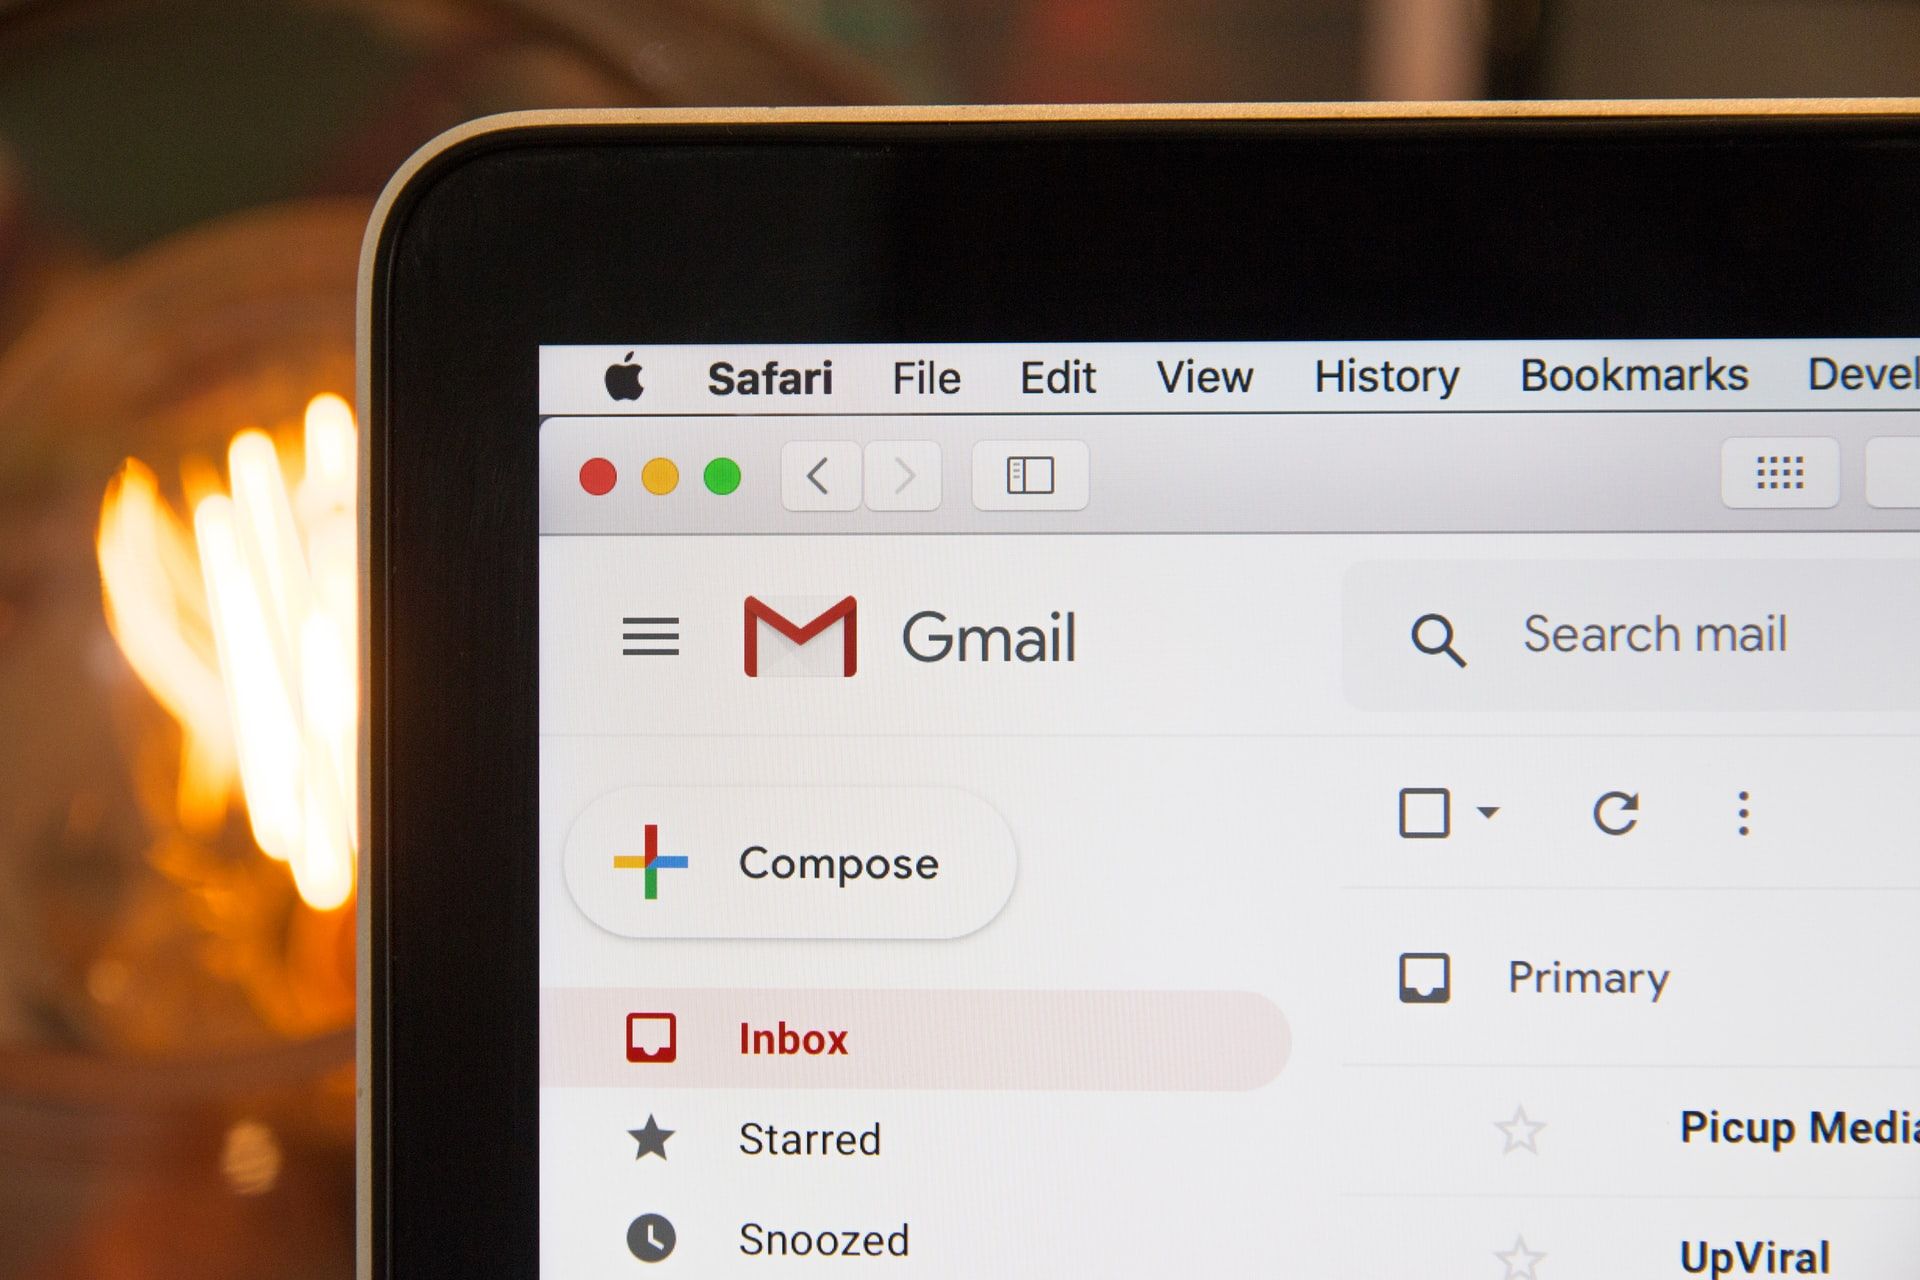 Gmail open on Safari.